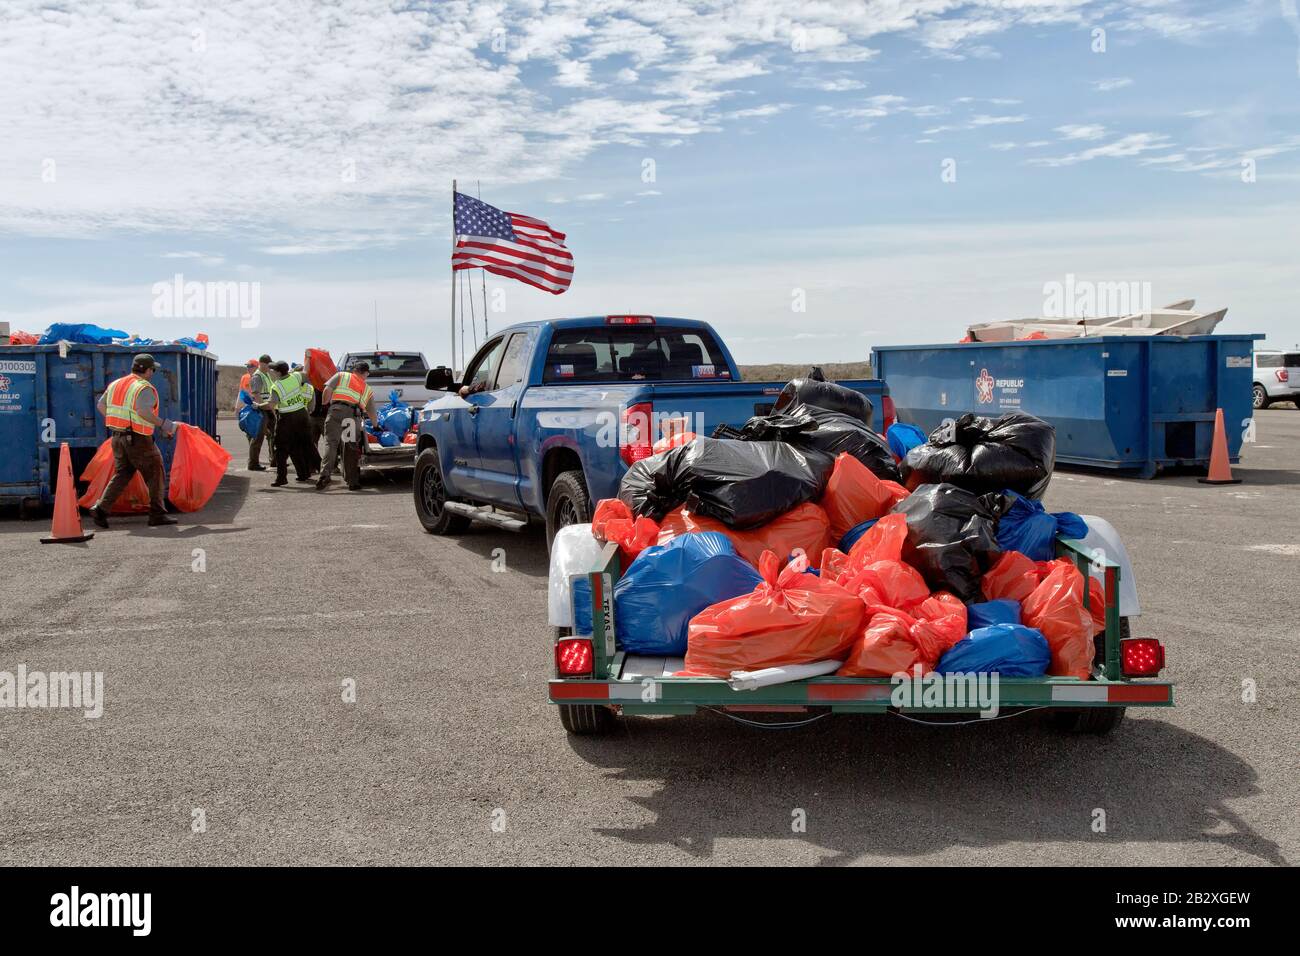 Remolques cargados con desechos marinos y basura de la costa recolectada por voluntarios, el personal del parque y voluntarios depositando en contenedores de basura. Bandera Americana. Foto de stock